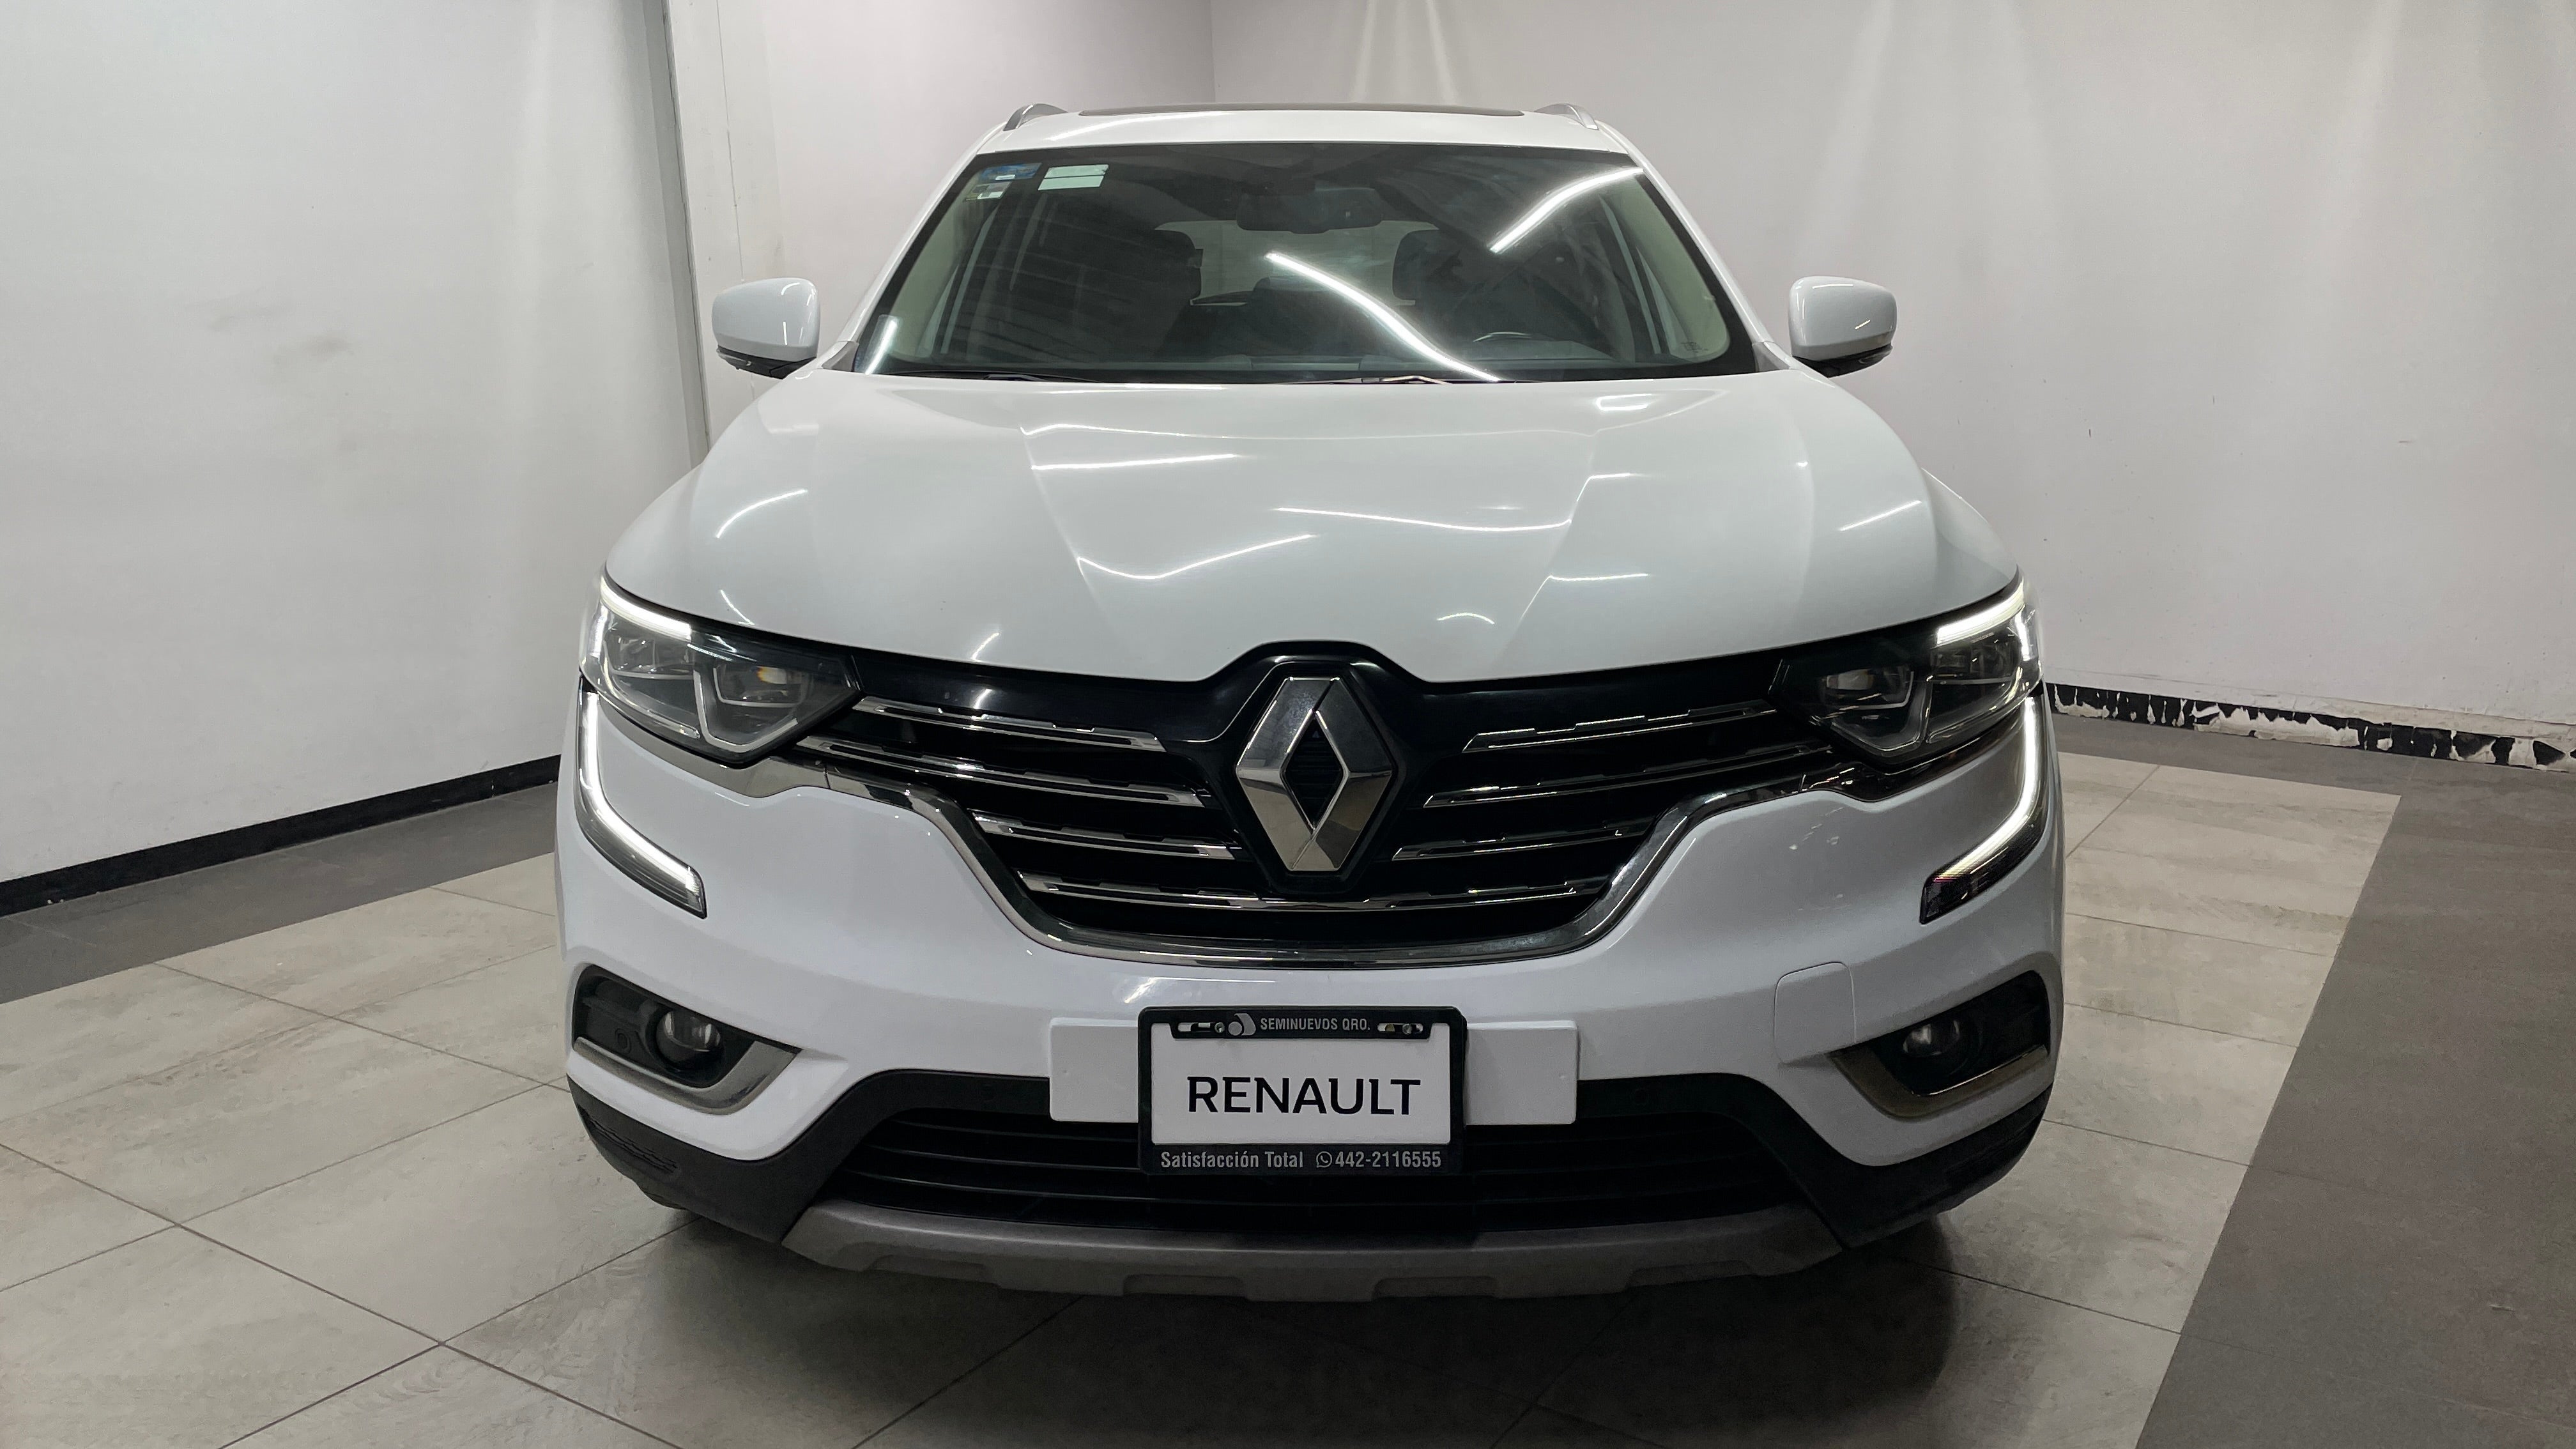 2019 Renault Koleos ICONIC L4 2.5L 171 CP 5 PUERTAS AUT PIEL BA AA QC